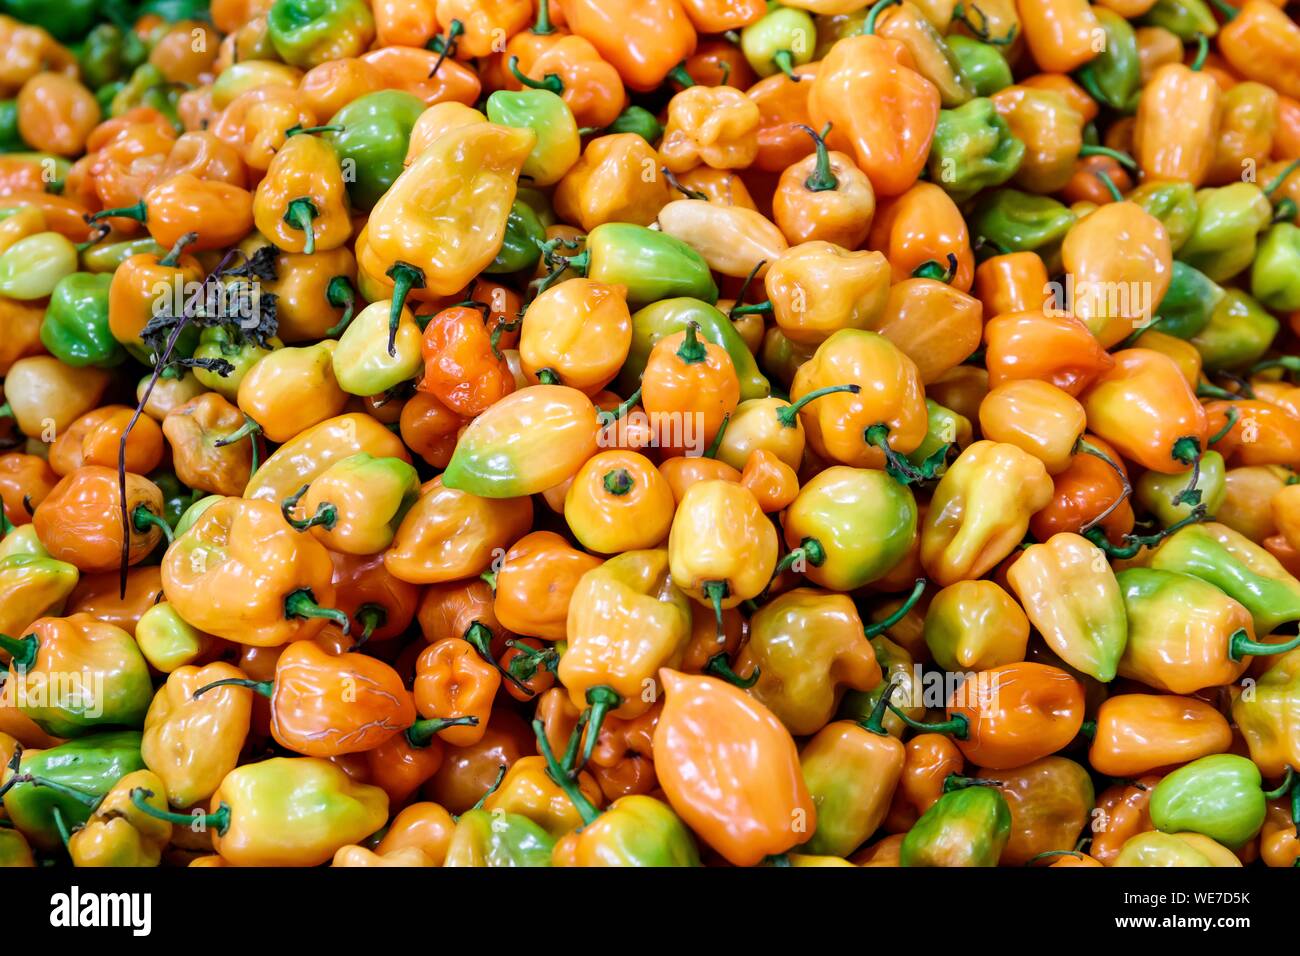 Messico, stato di Campeche, Campeche, manzanos peperoncino Foto Stock